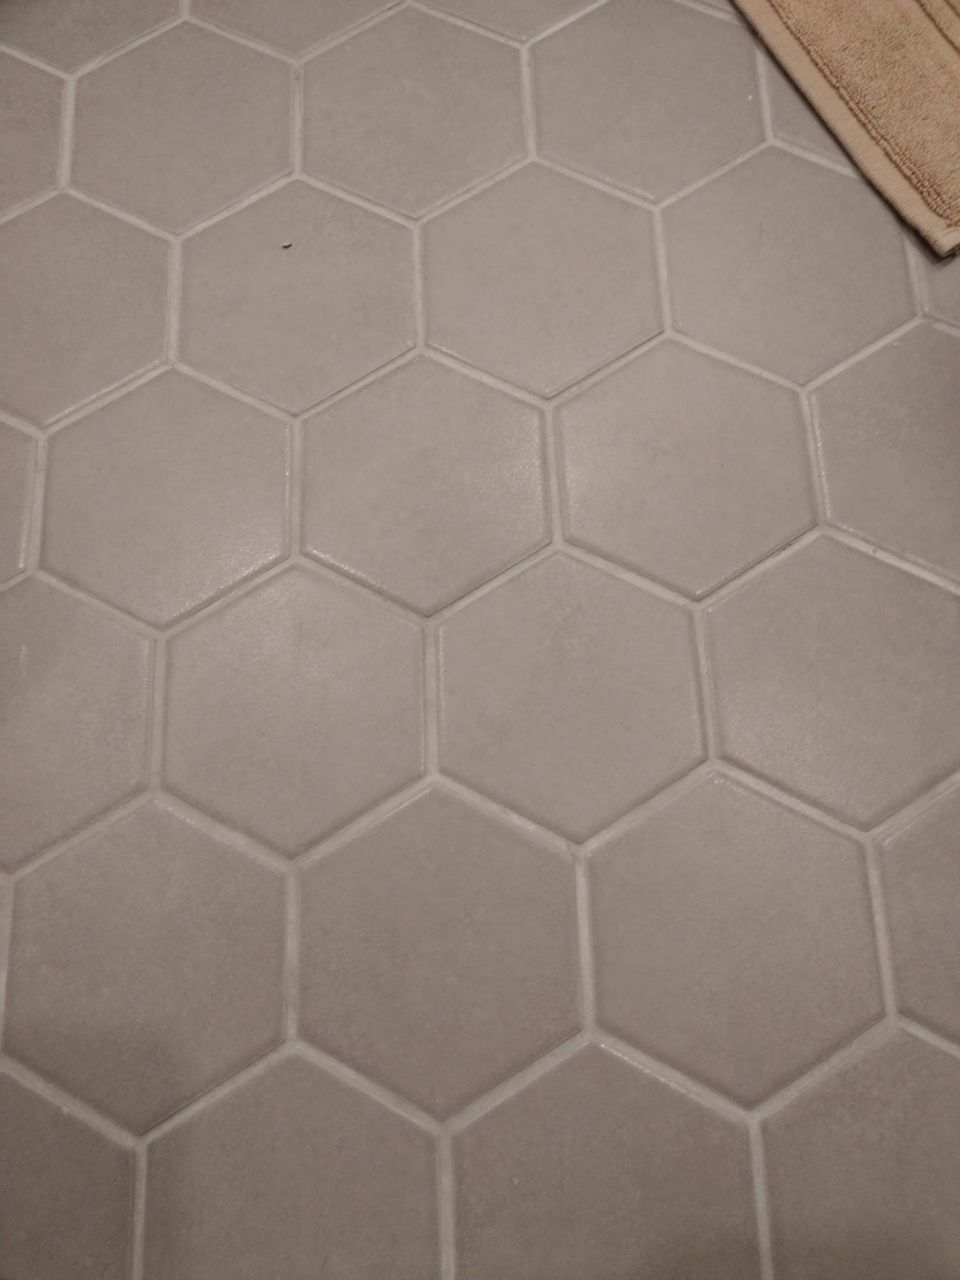 Uusia Hexagon lattialaattoja